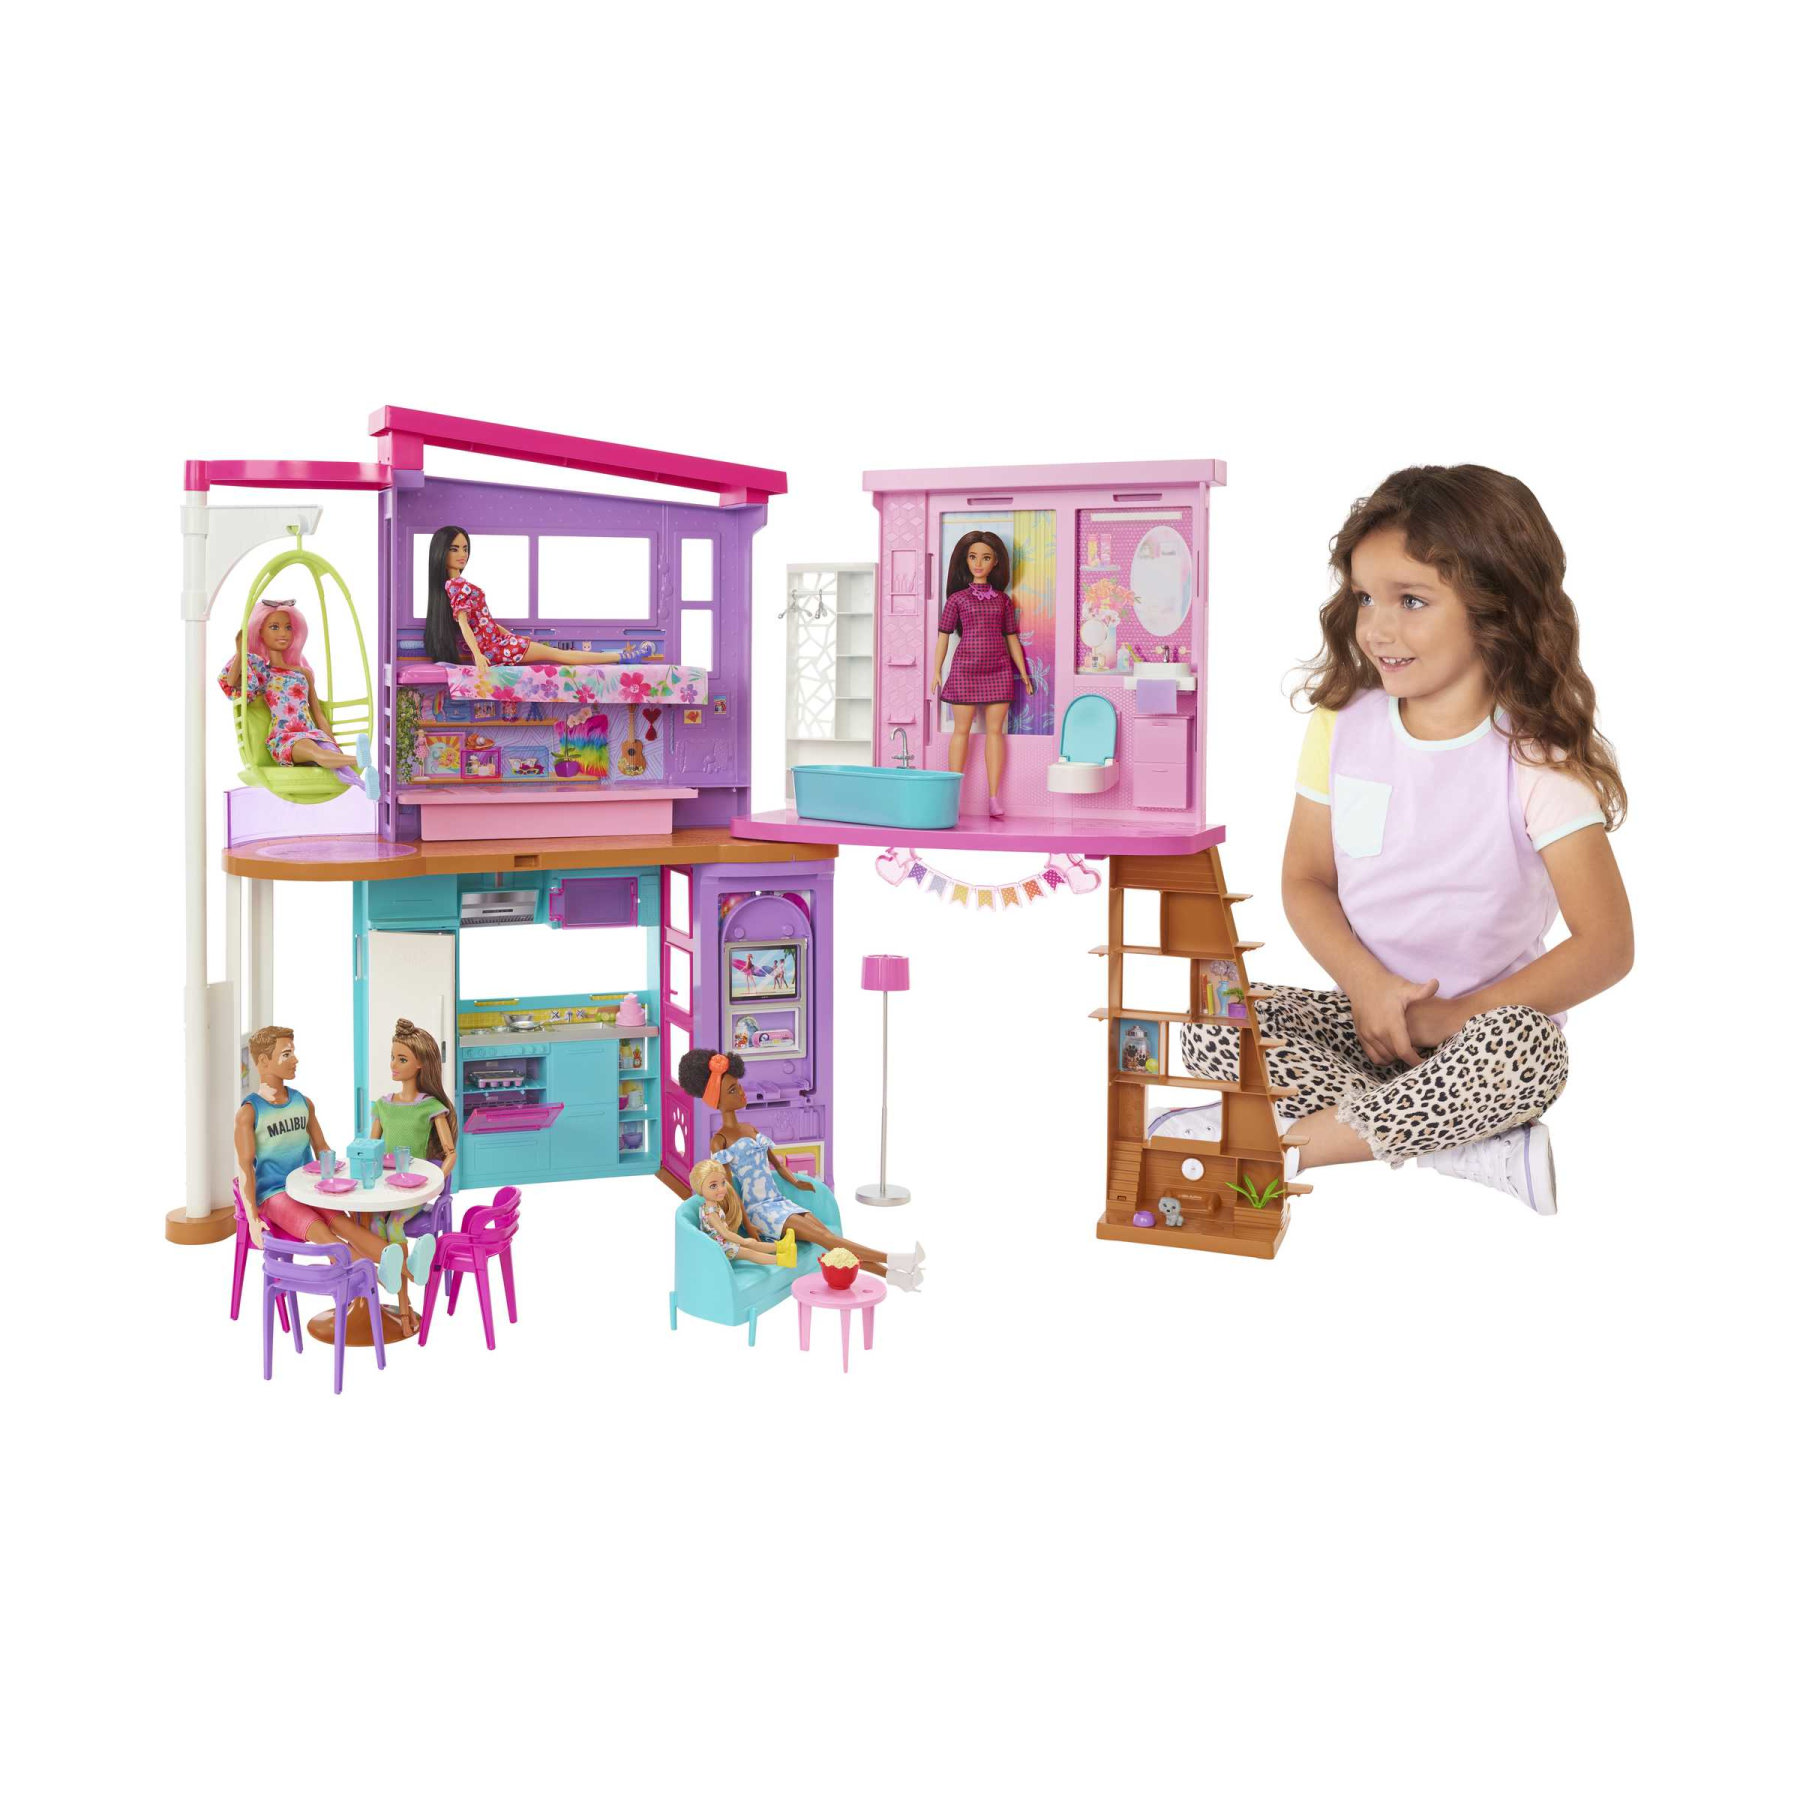 Barbie casa di malibu (106 cm) playset casa delle bambole con 2 piani, 6 stanze, ascensore, altalena e +30 accessori, giocattolo per bambini 3+ anni - Barbie